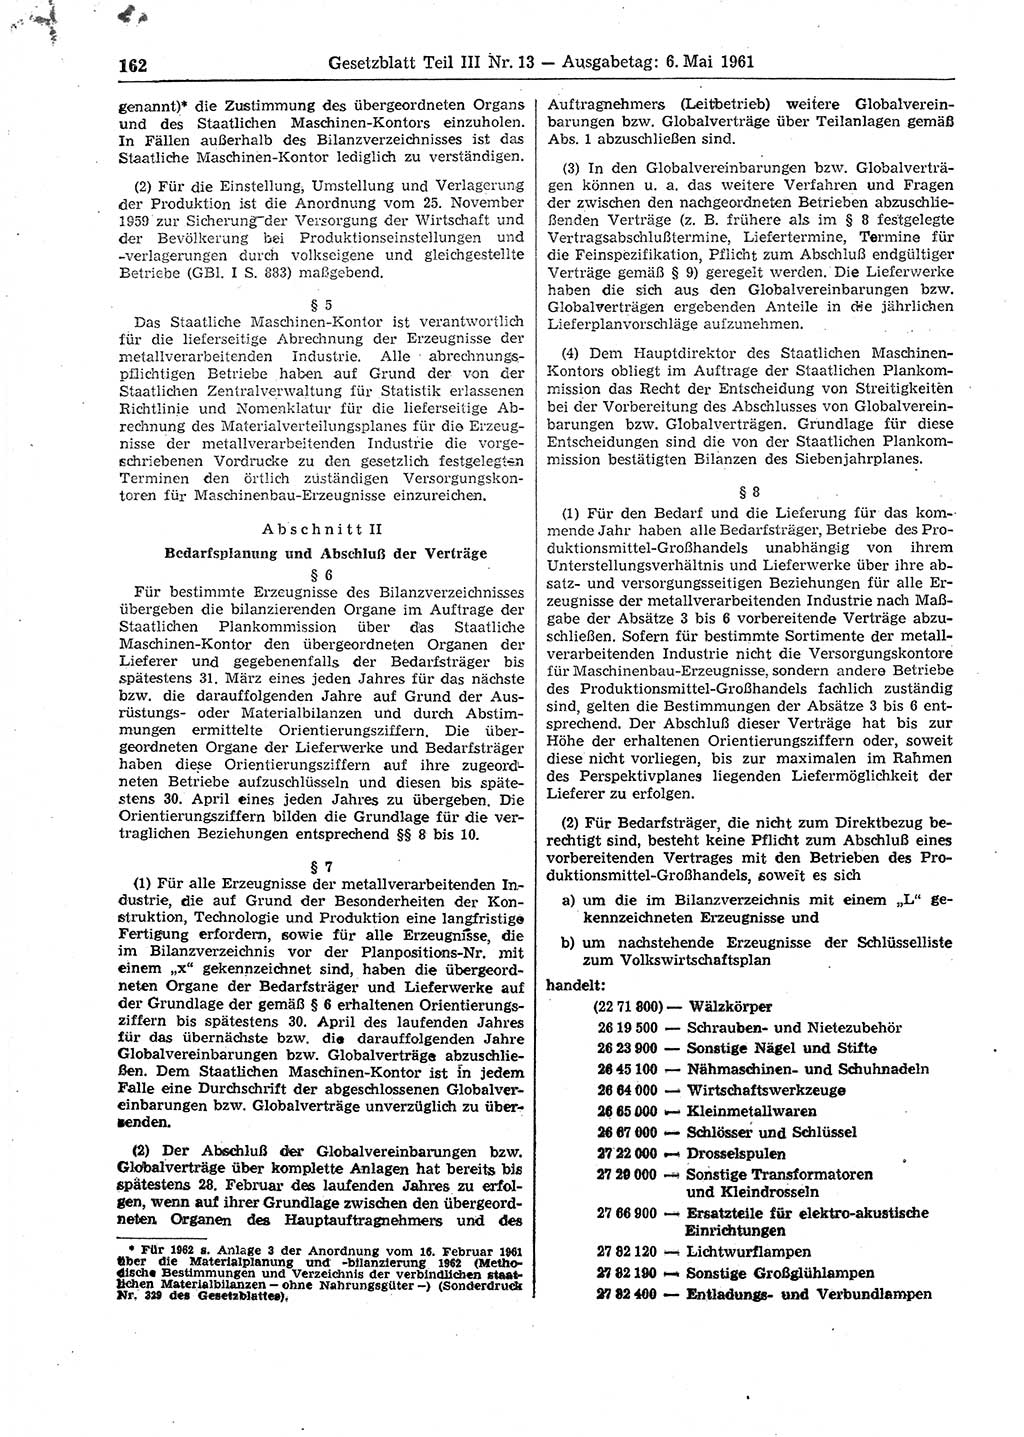 Gesetzblatt (GBl.) der Deutschen Demokratischen Republik (DDR) Teil ⅠⅠⅠ 1961, Seite 162 (GBl. DDR ⅠⅠⅠ 1961, S. 162)